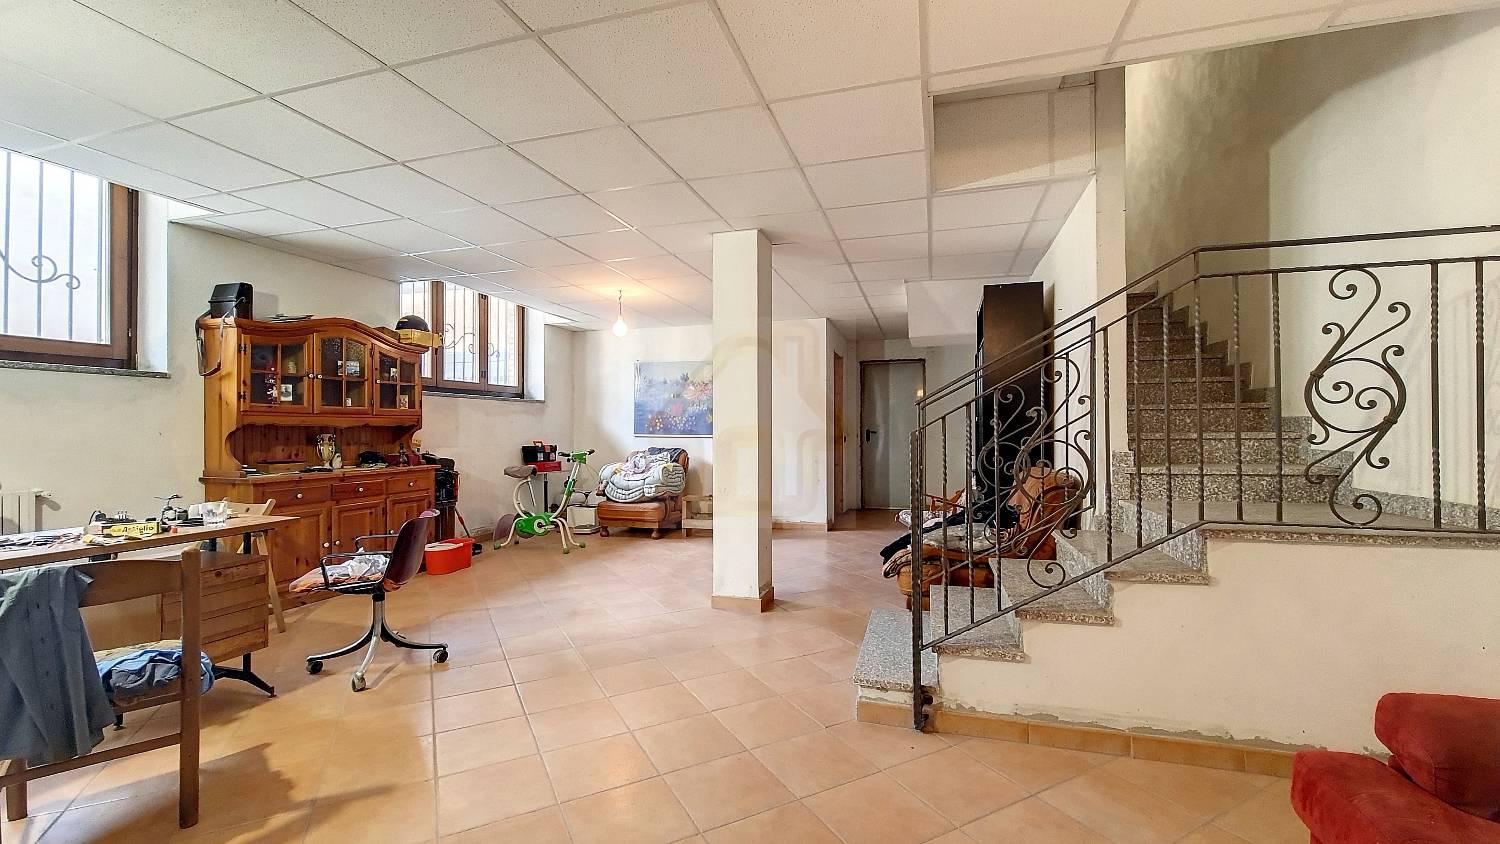 Villa Bifamiliare in vendita a Lainate, 4 locali, zona Zona: Pagliera, prezzo € 539.000 | CambioCasa.it